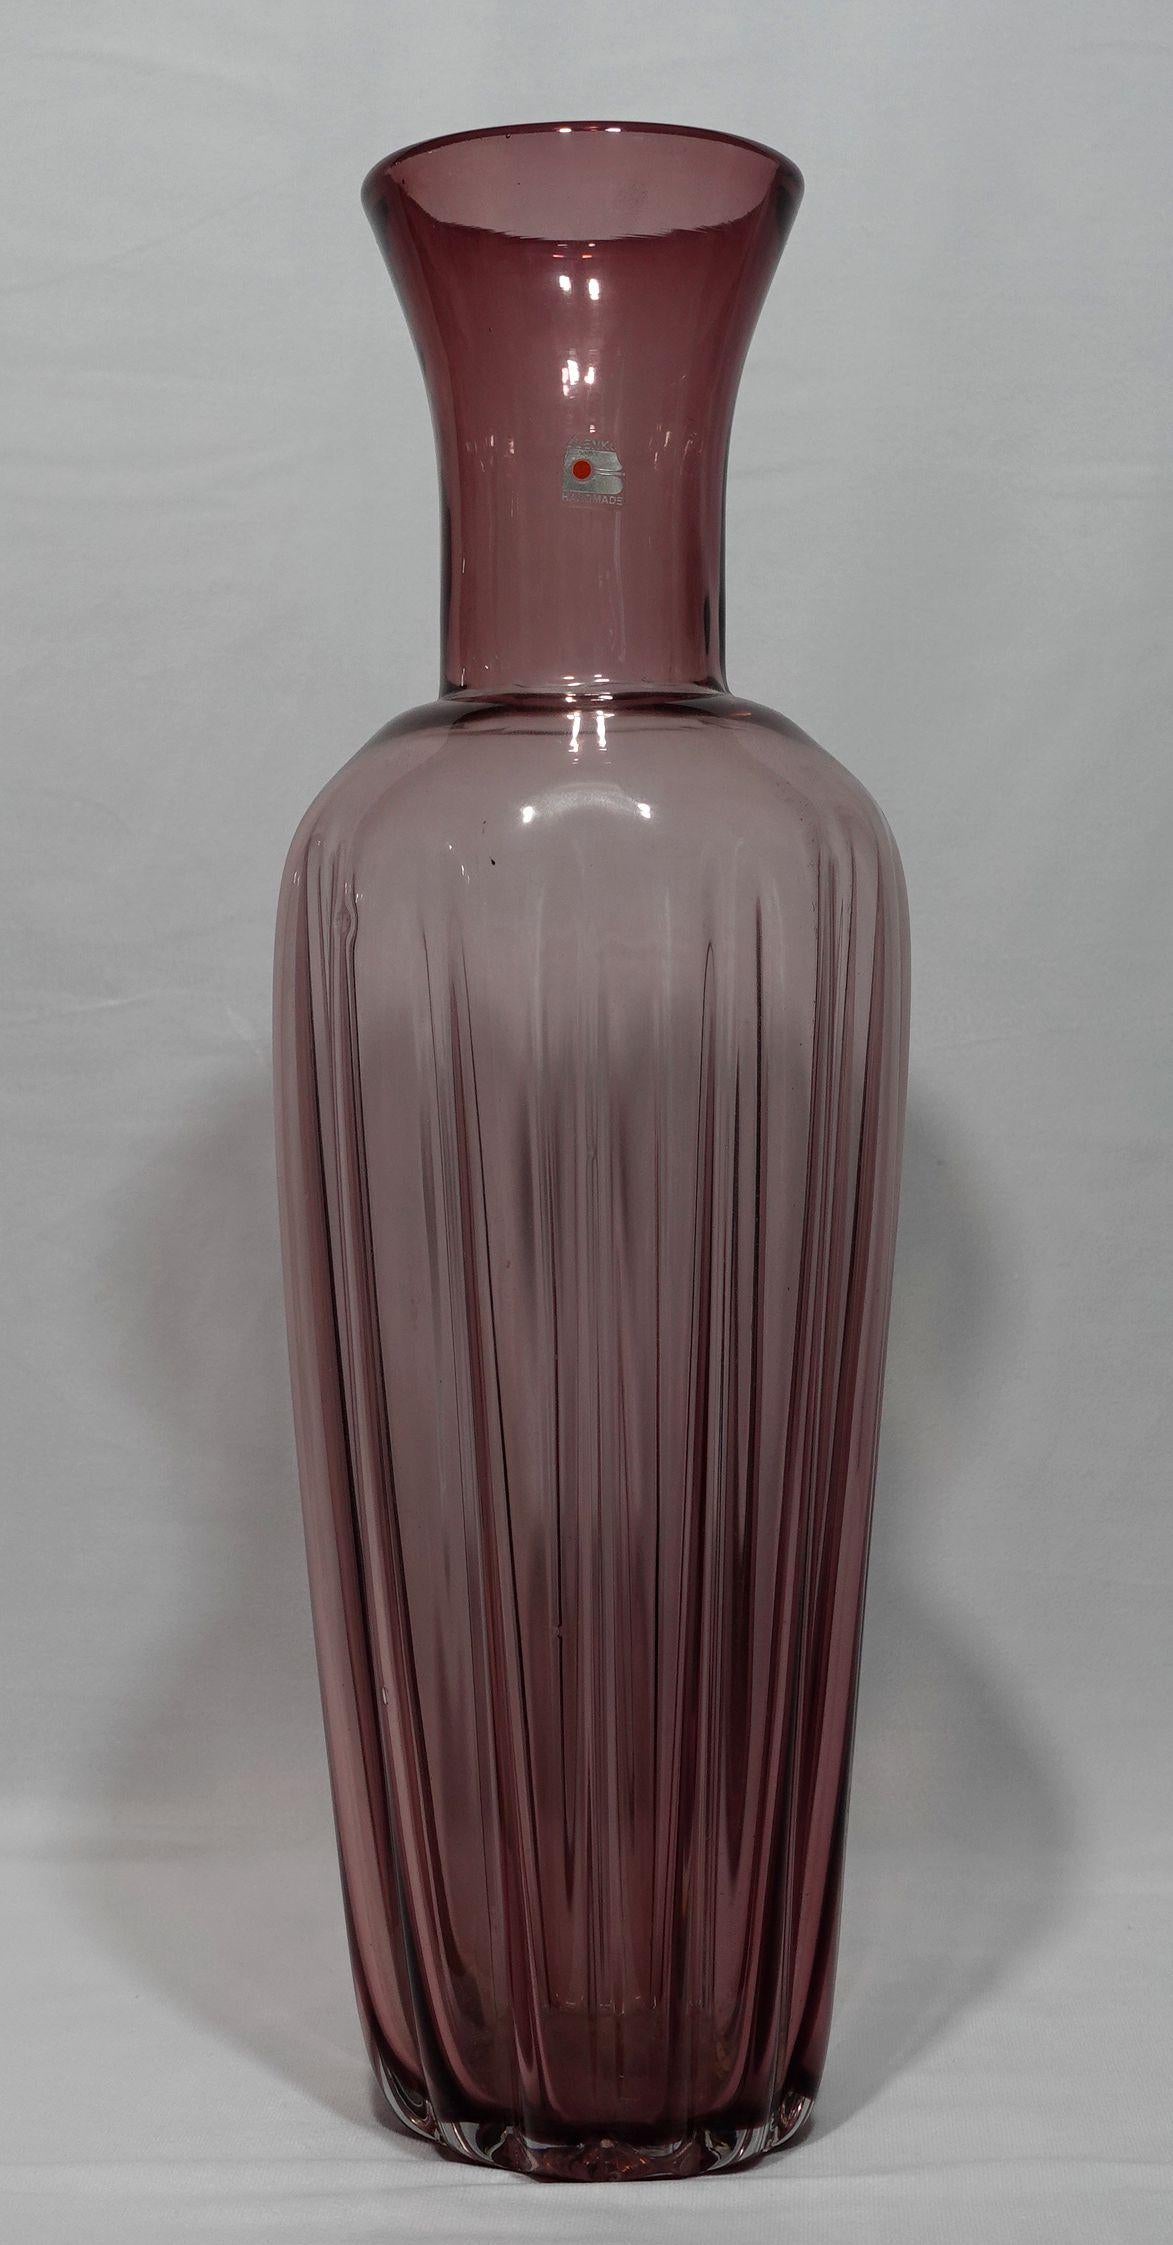 Grand vase en verre violet strié soufflé à la main par Blenko, Milton, Virginie-Occidentale, c.C. 1970

Magnifique grand vase côtelé soufflé à la main par Blenko. L'effet nervuré ajoute beaucoup de profondeur à ce vase, de même que les différents